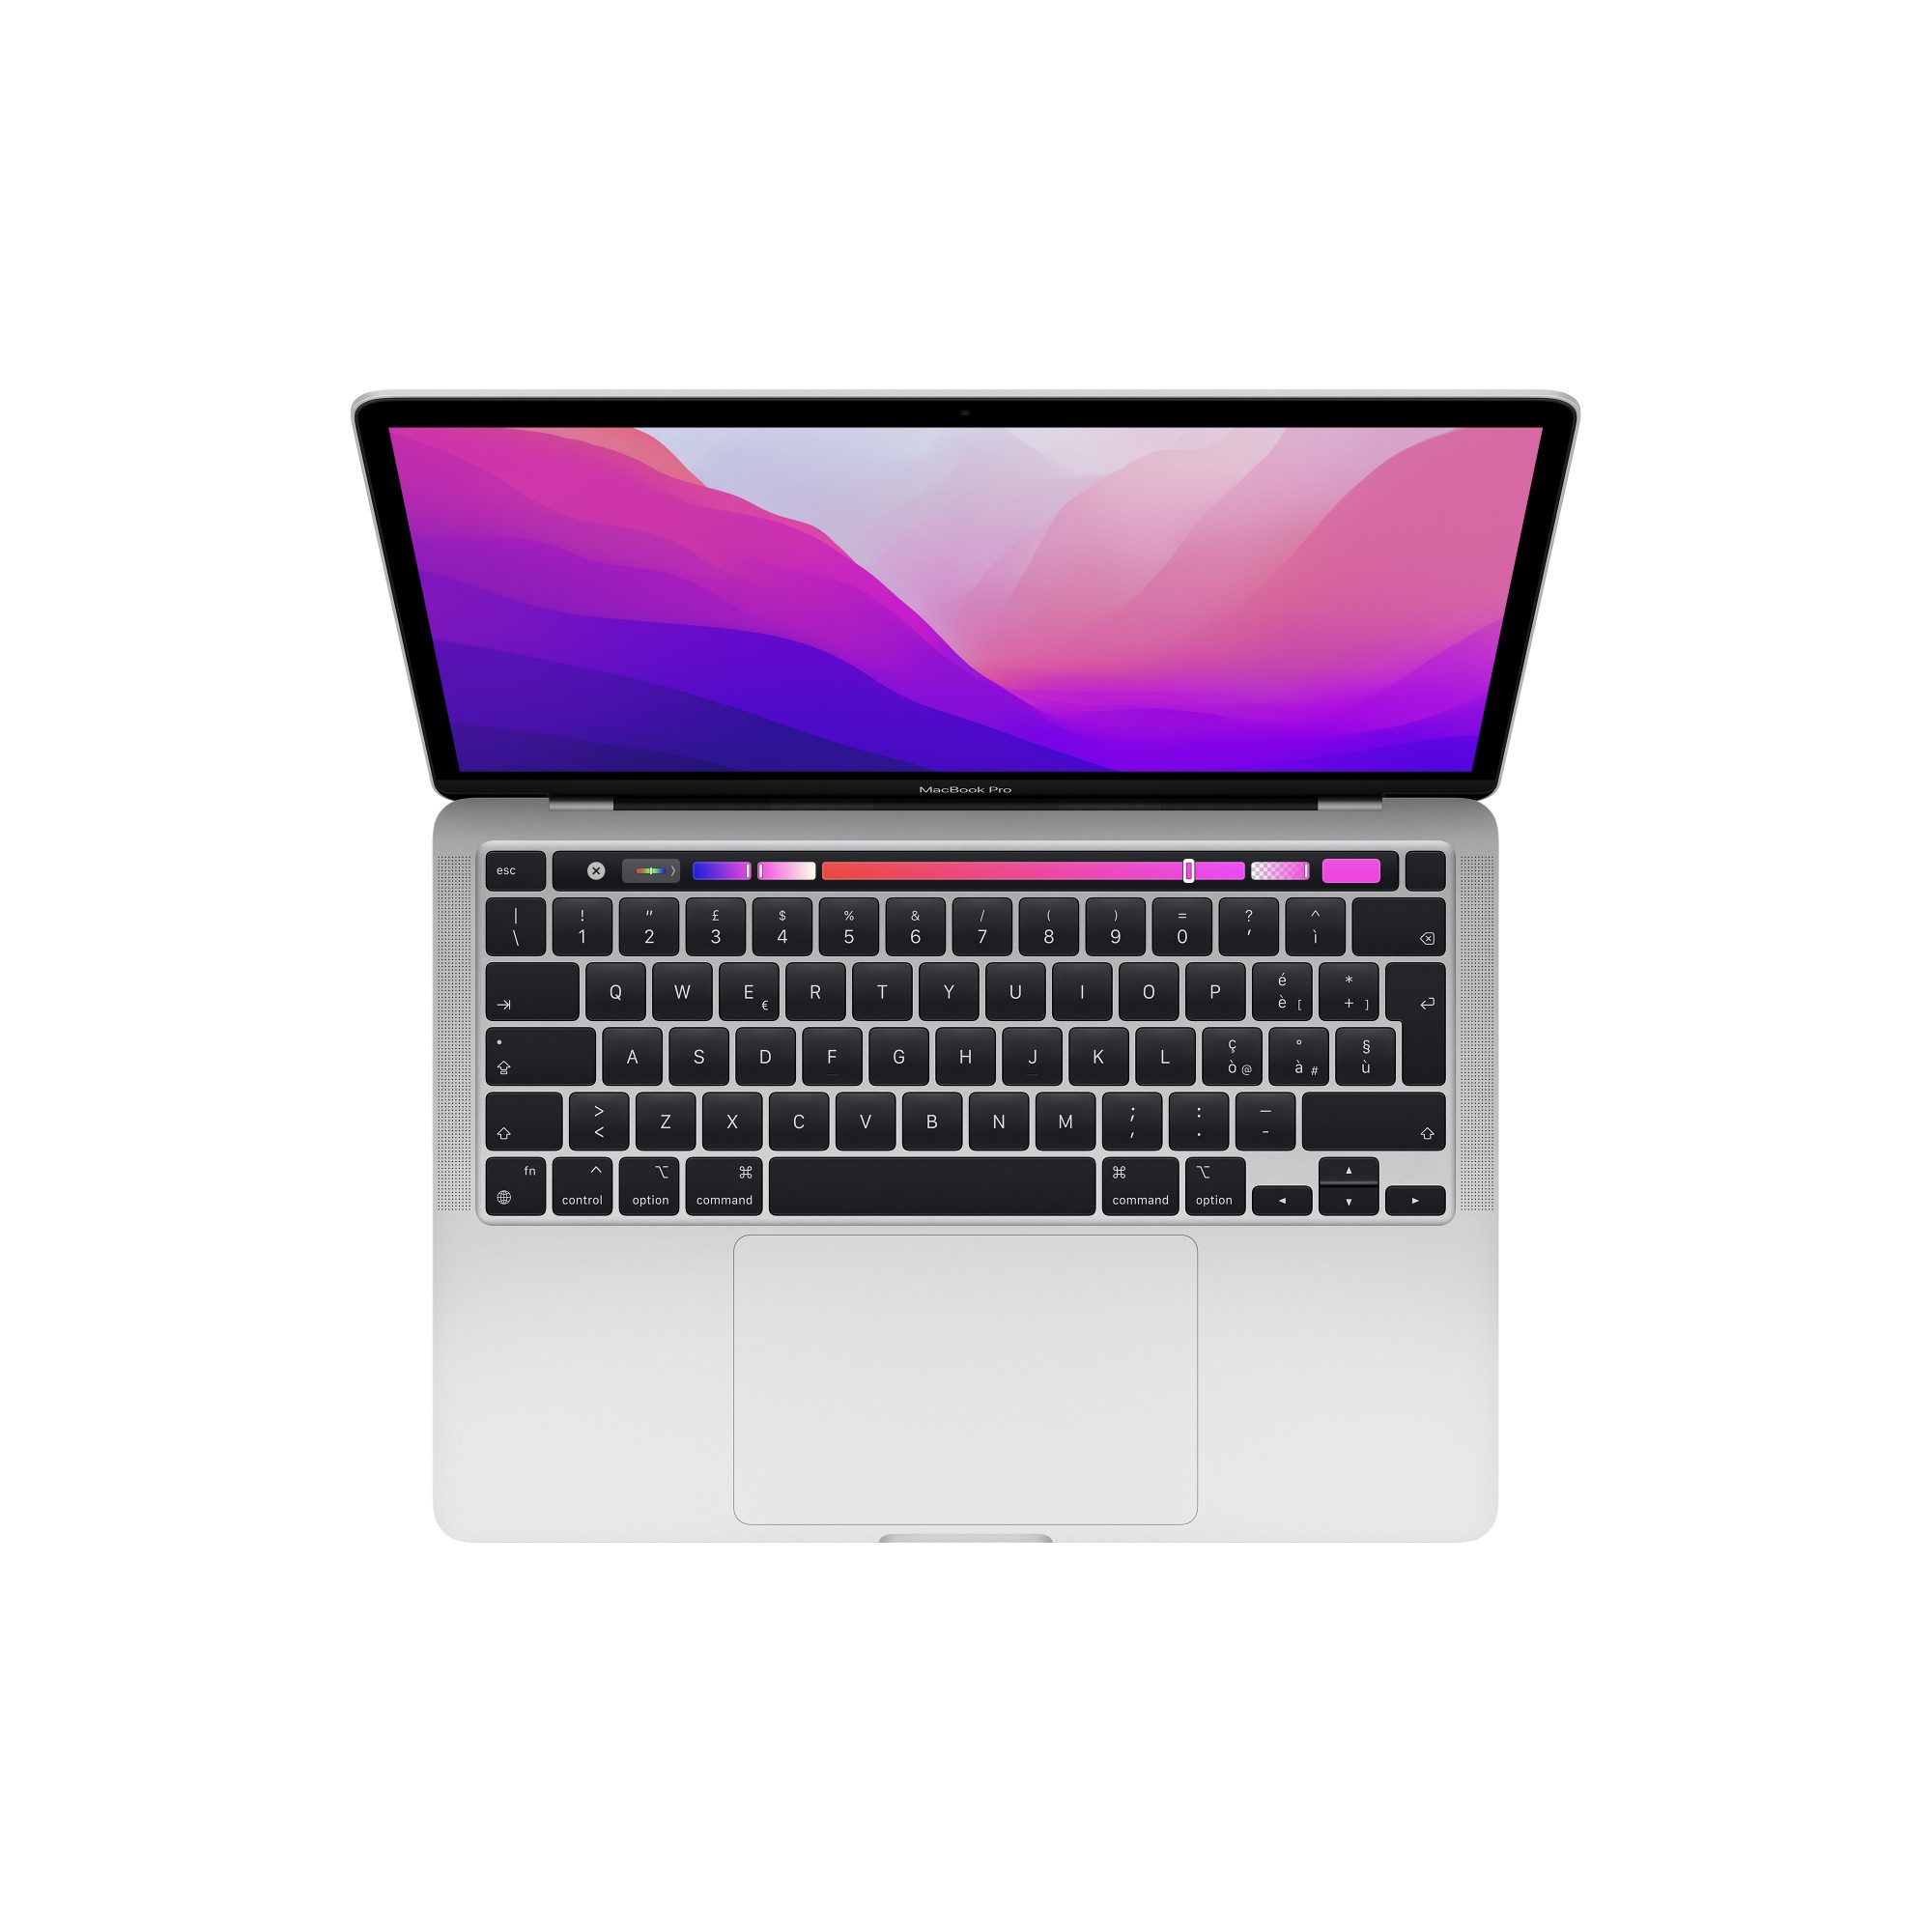 MacBook Pro, 13.3" IPS, 2560 x 1600, 500 cd/m?, 8-core Apple M2 chip, 8GB/256GB SSD, 10-core GPU, Thunderbolt/USB 4 x 2, Wi-Fi 6, Bluetooth 5.0, macOS